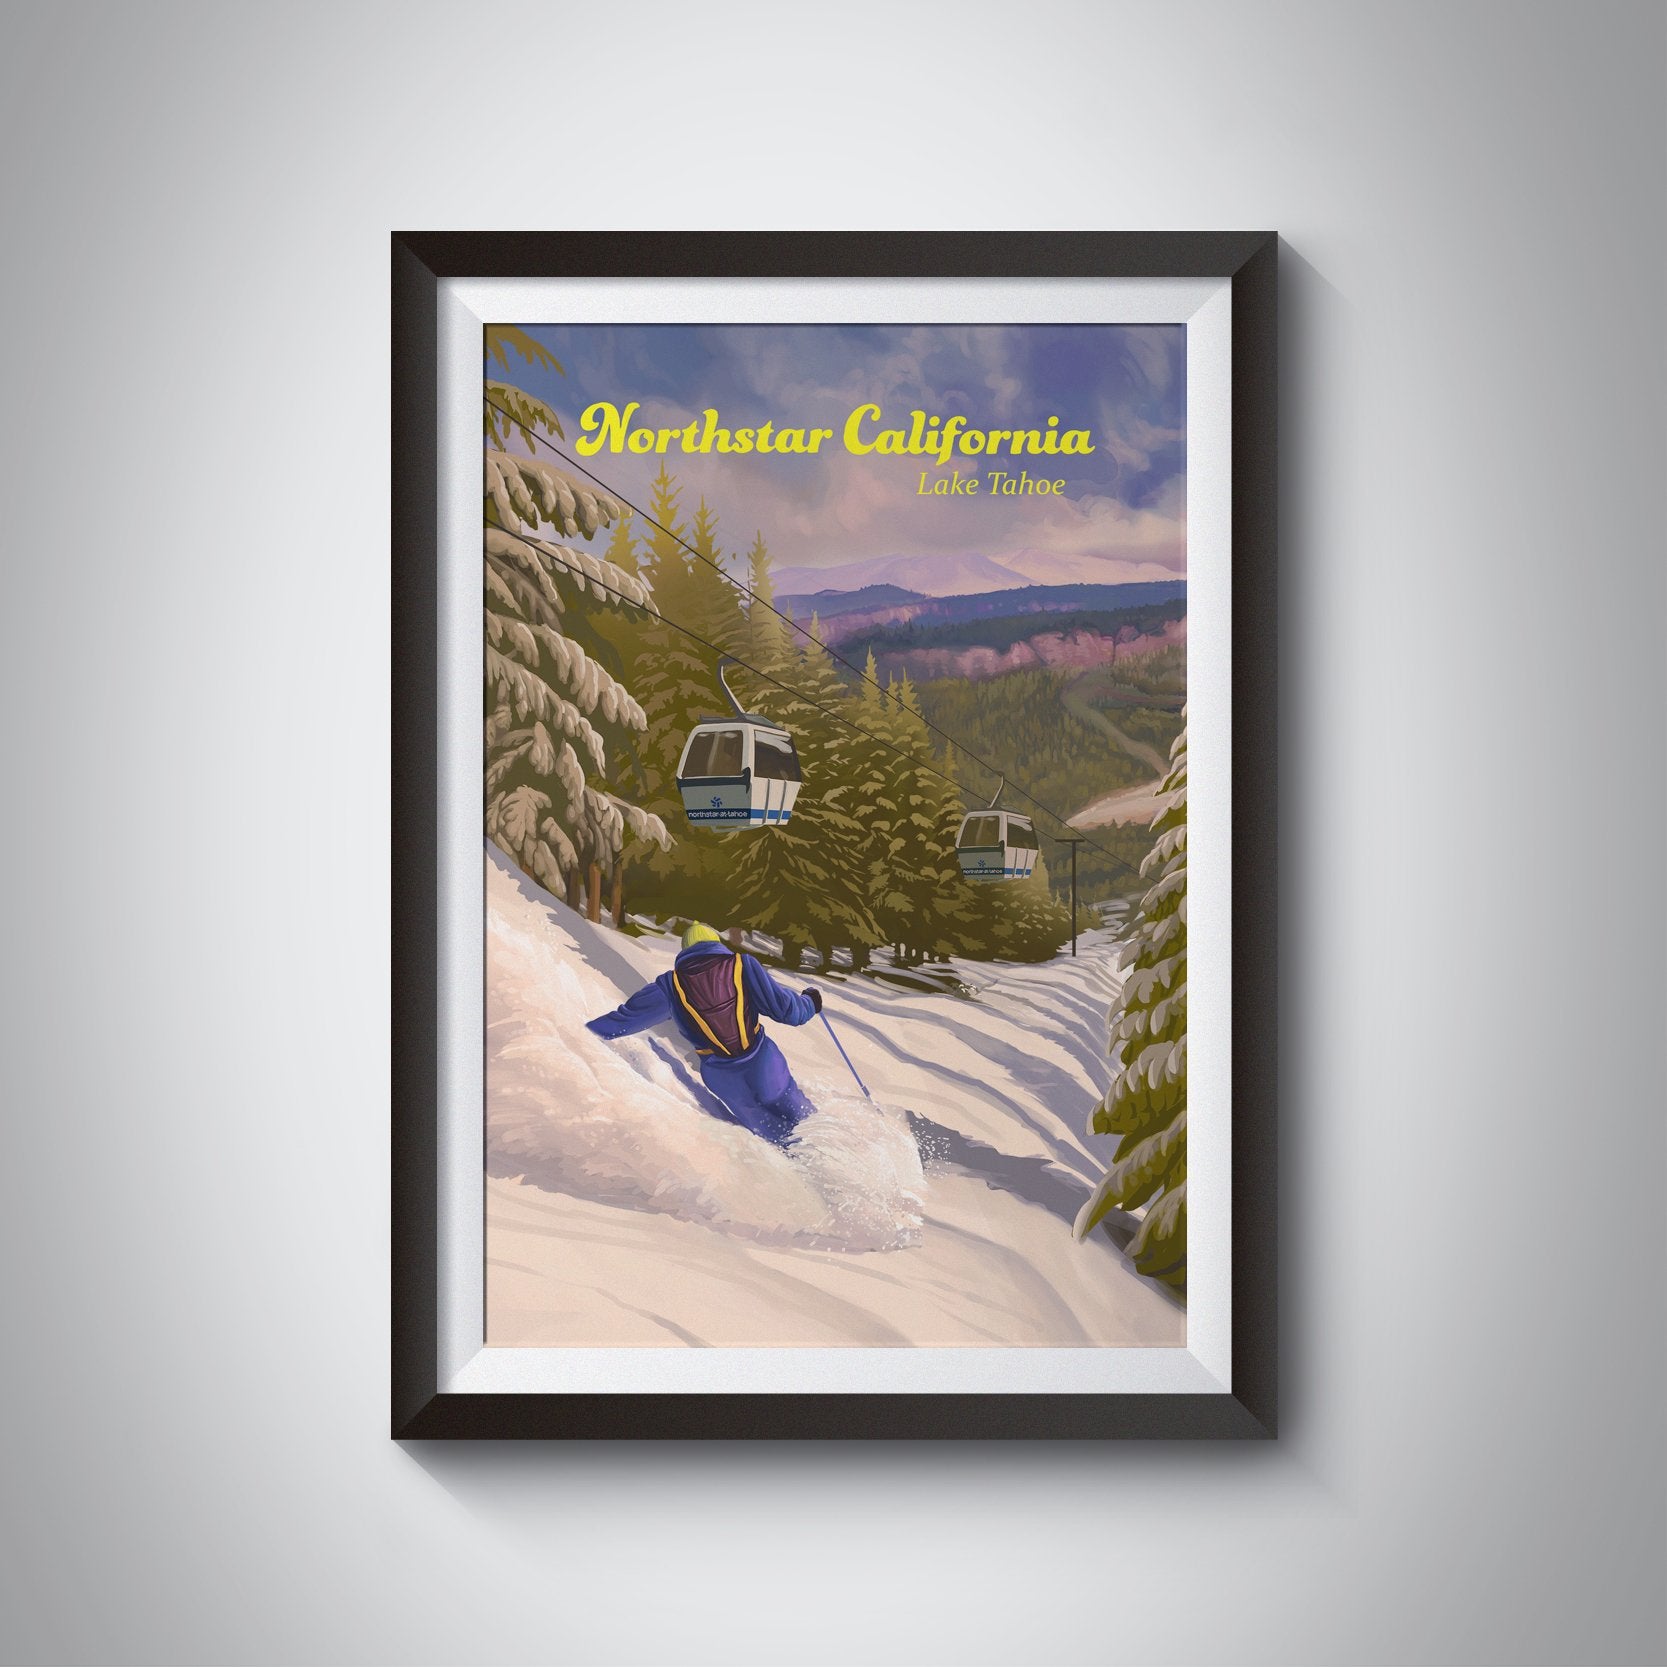 Northstar California Lake Tahoe Ski Resort Travel Poster